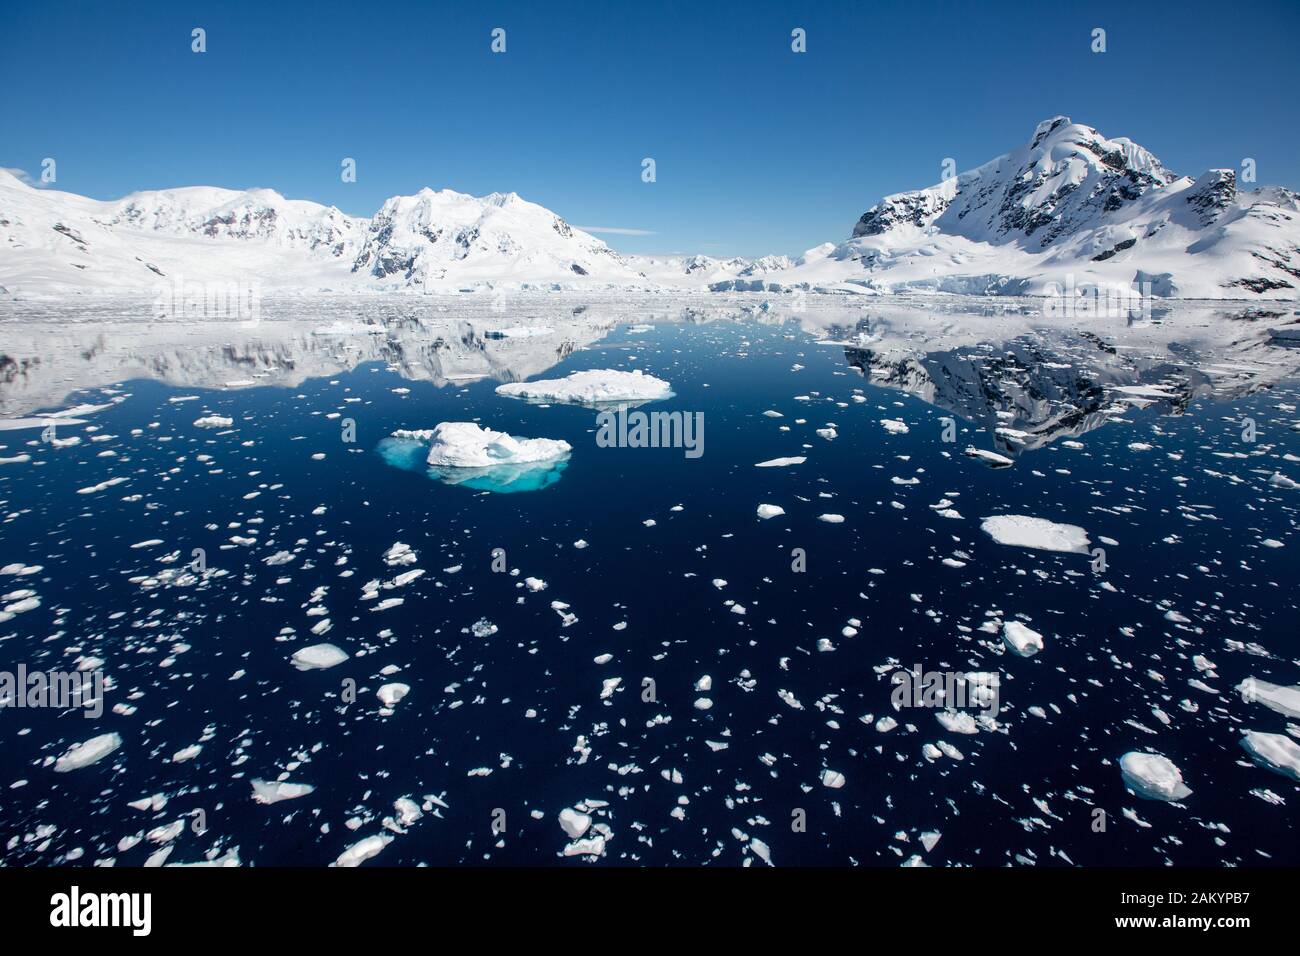 Ghiaccio del ghiacciaio, ghiaccio di brash, ghiaccio del mare con le montagne e ghiacciai della baia del paradiso in sole luminoso con i riflessi, Antartide Foto Stock